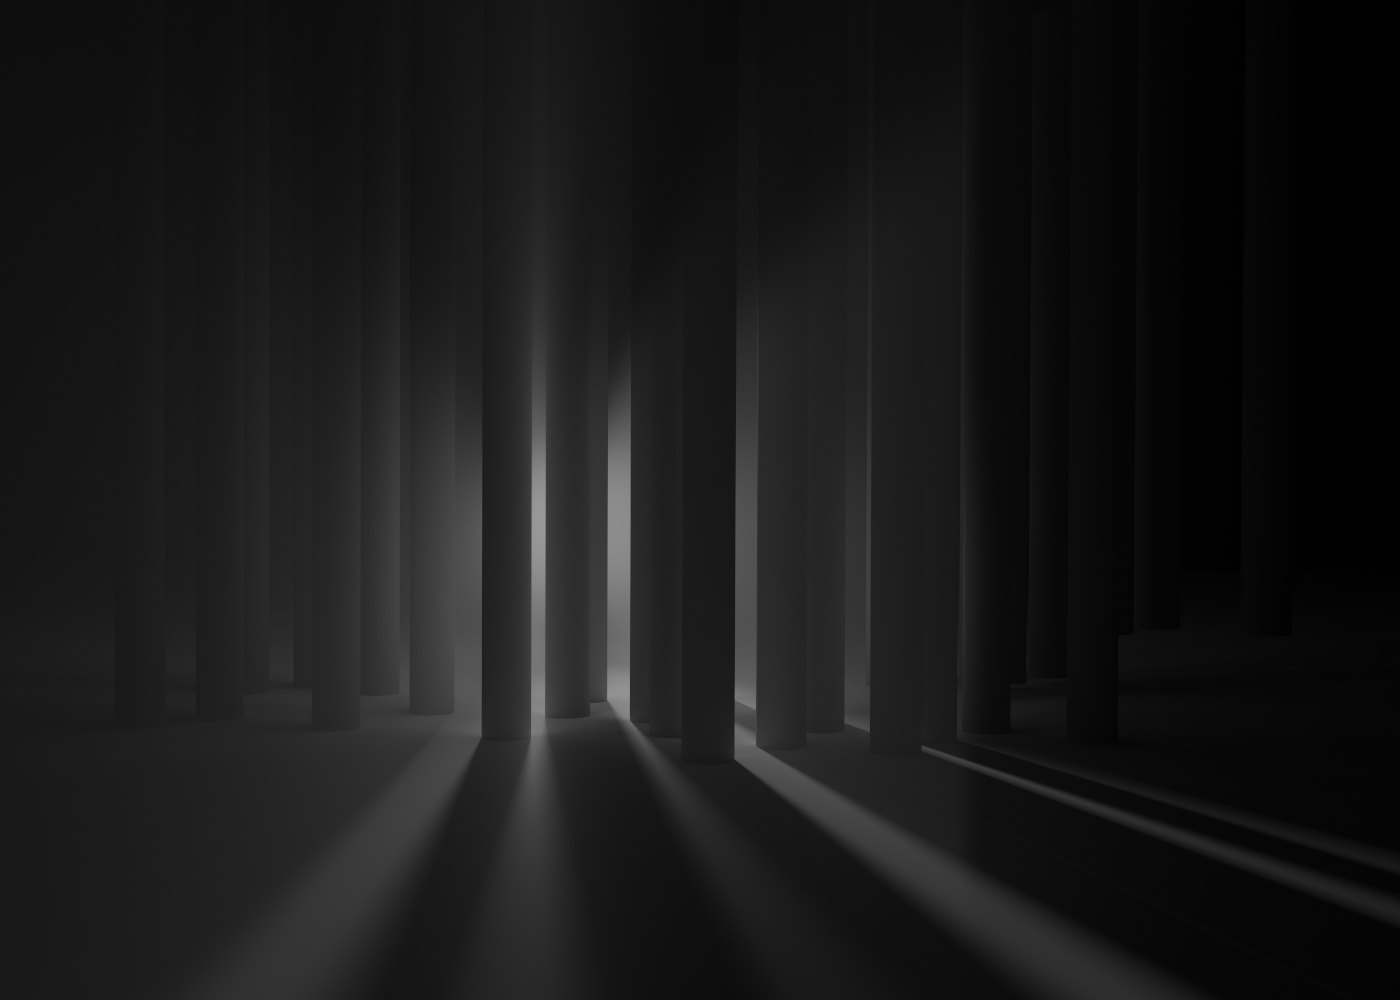 Abstrakte szenische 3D-Kunst, Raytracing, 2020. Viele zylindrische Säulen stehen in der Dunkelheit vor dem Betrachter und versperren die Sicht auf eine großflächig beleuchtete Stelle dahinter.